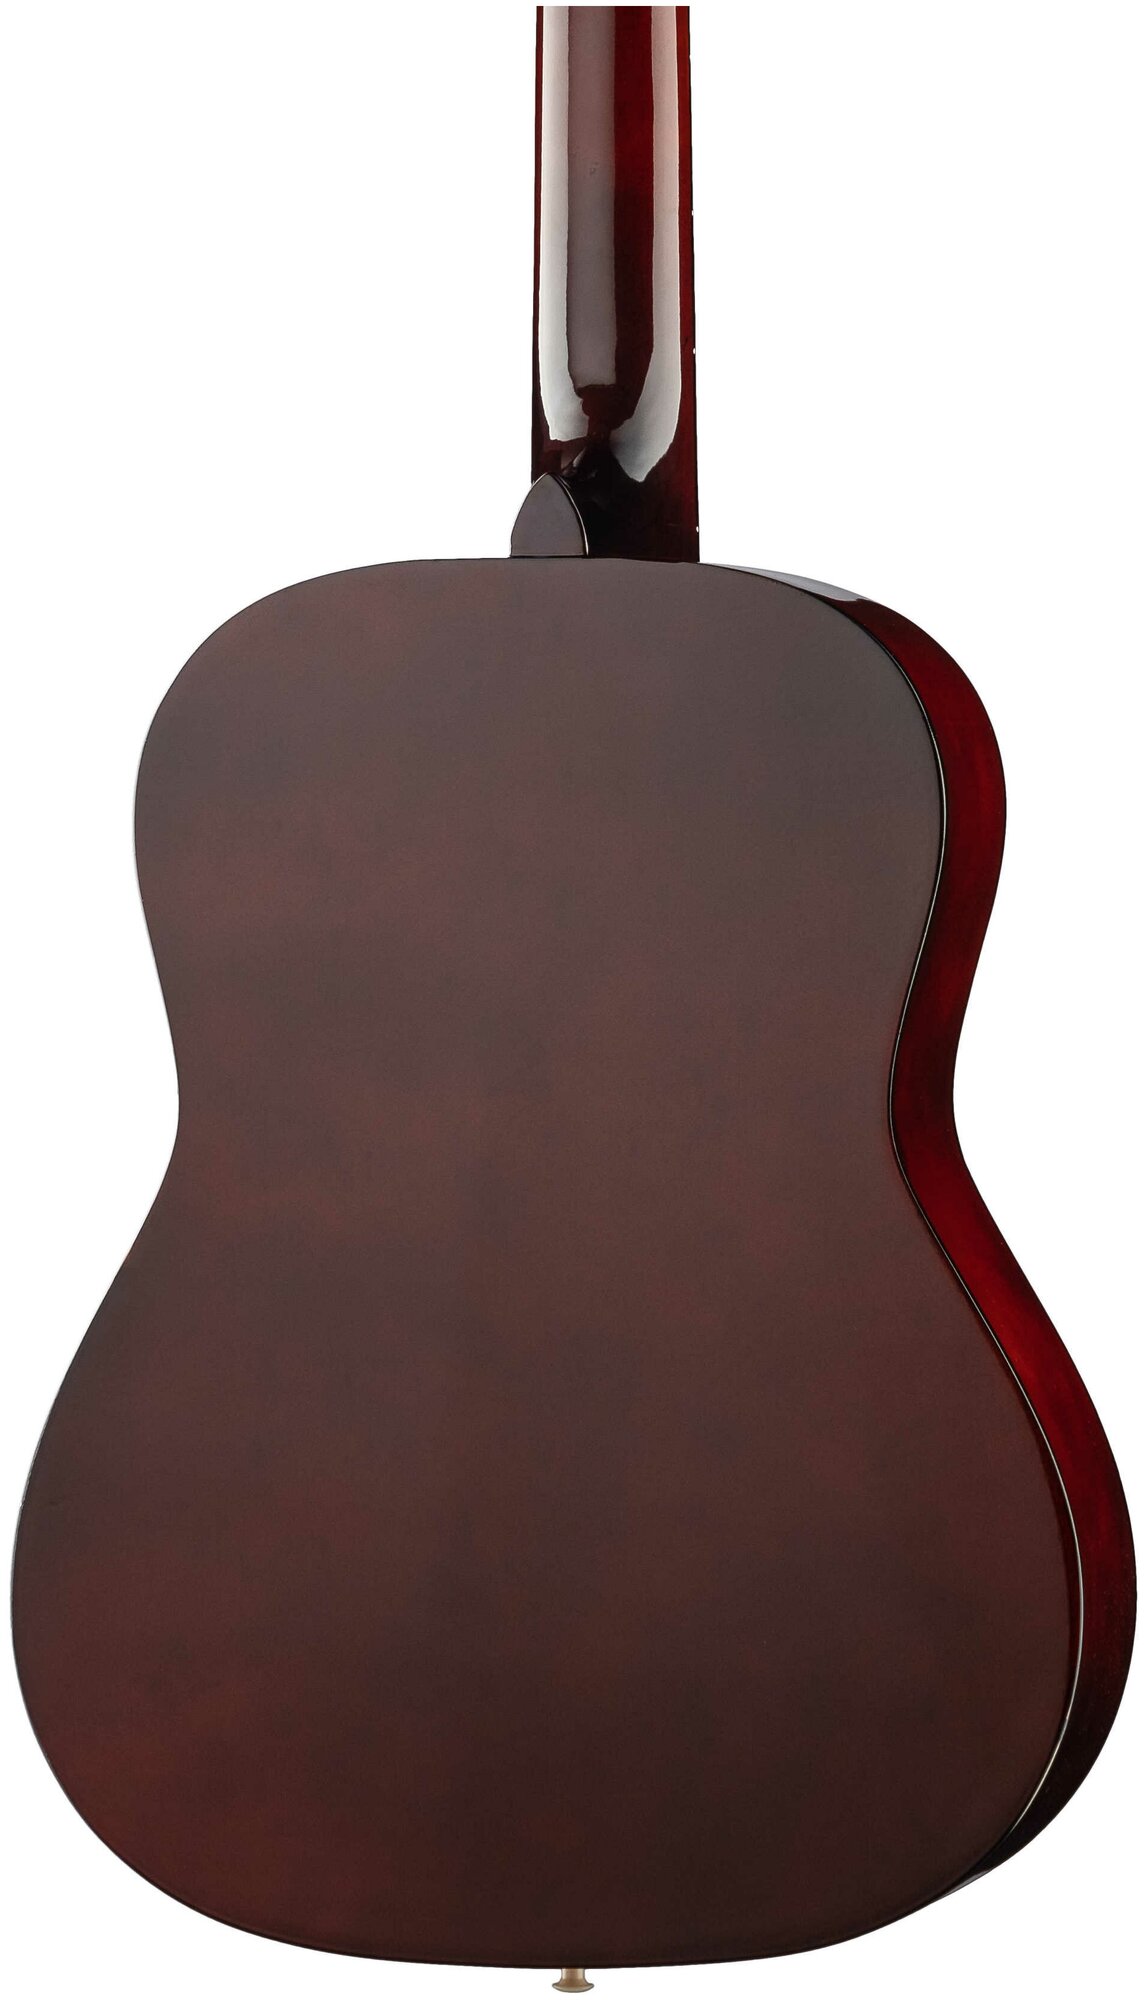 FT-C-B39-N Классическая гитара, цвет натуральный, Fante